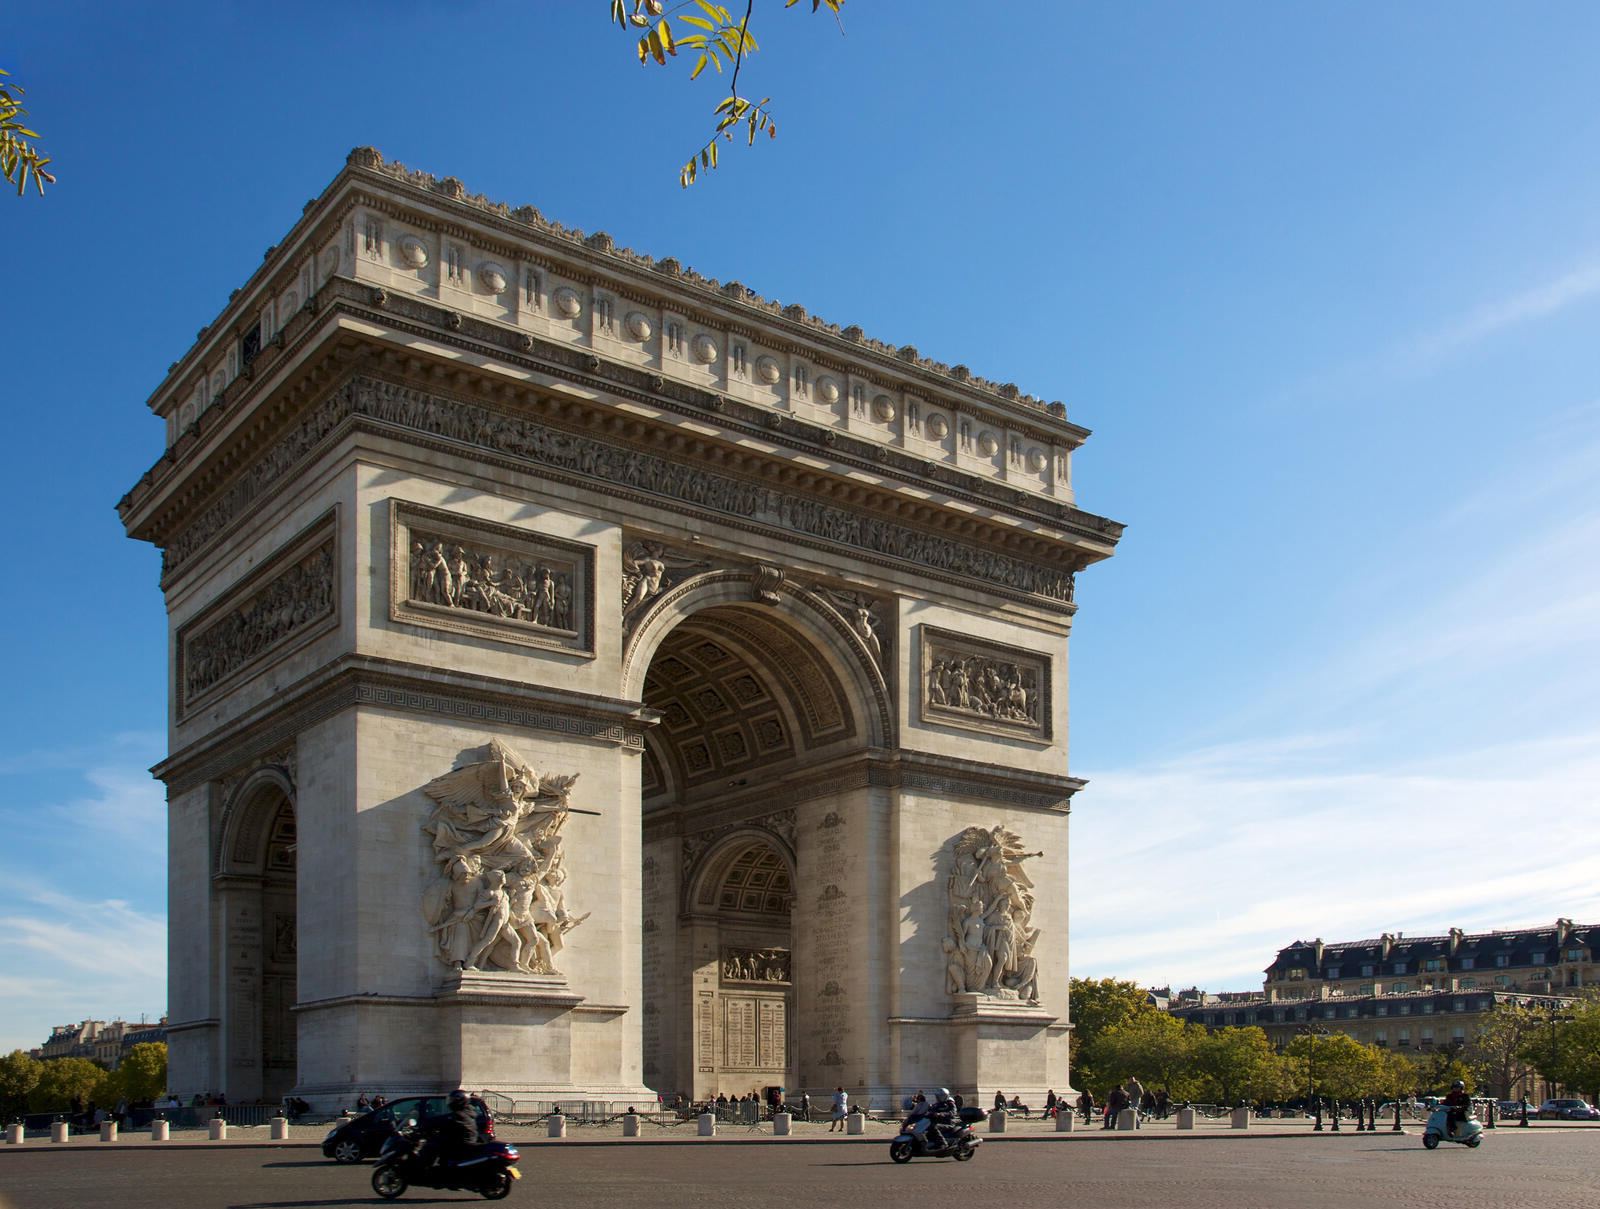 15-facts-about-paris-iconic-arc-de-triomphe